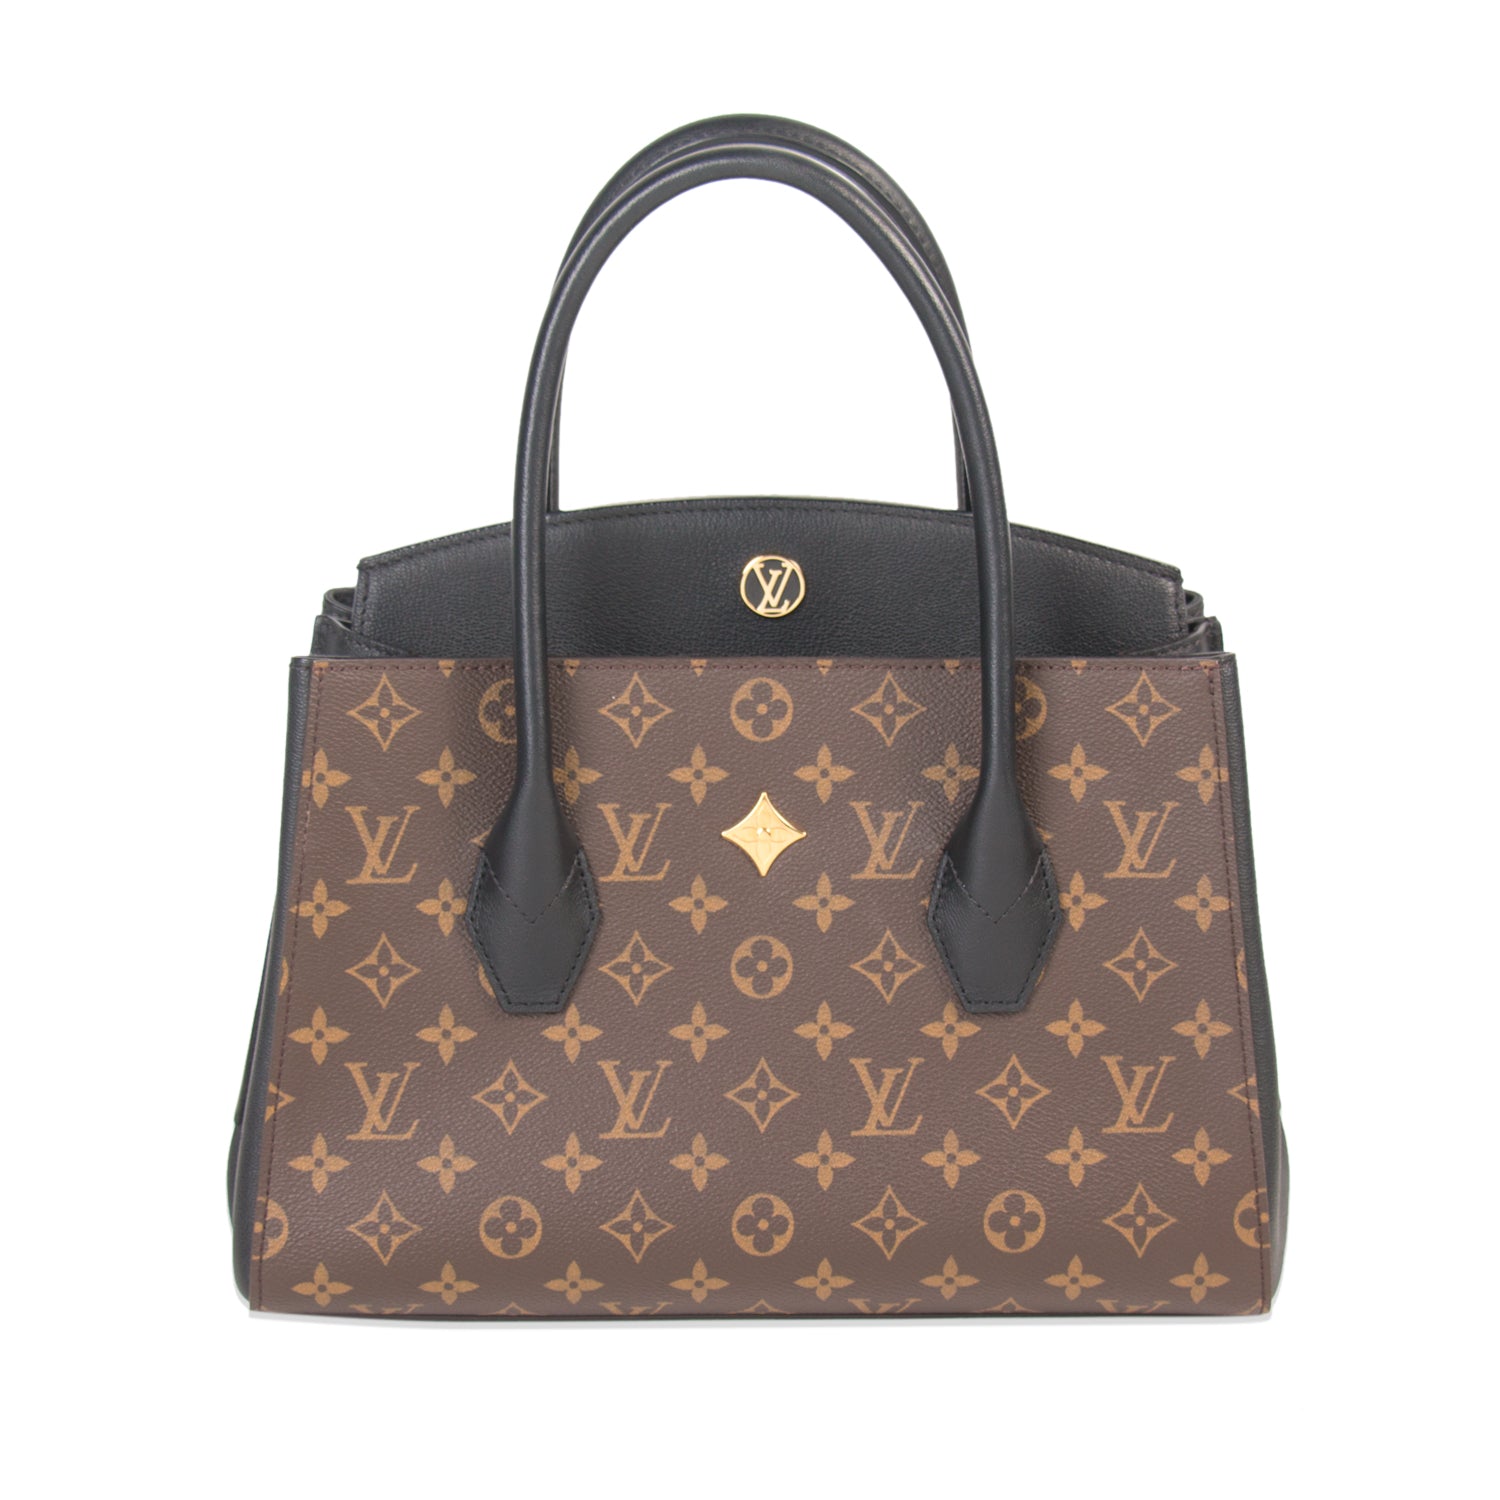 Shop authentic Louis Vuitton Monogram Bangle at revogue for just